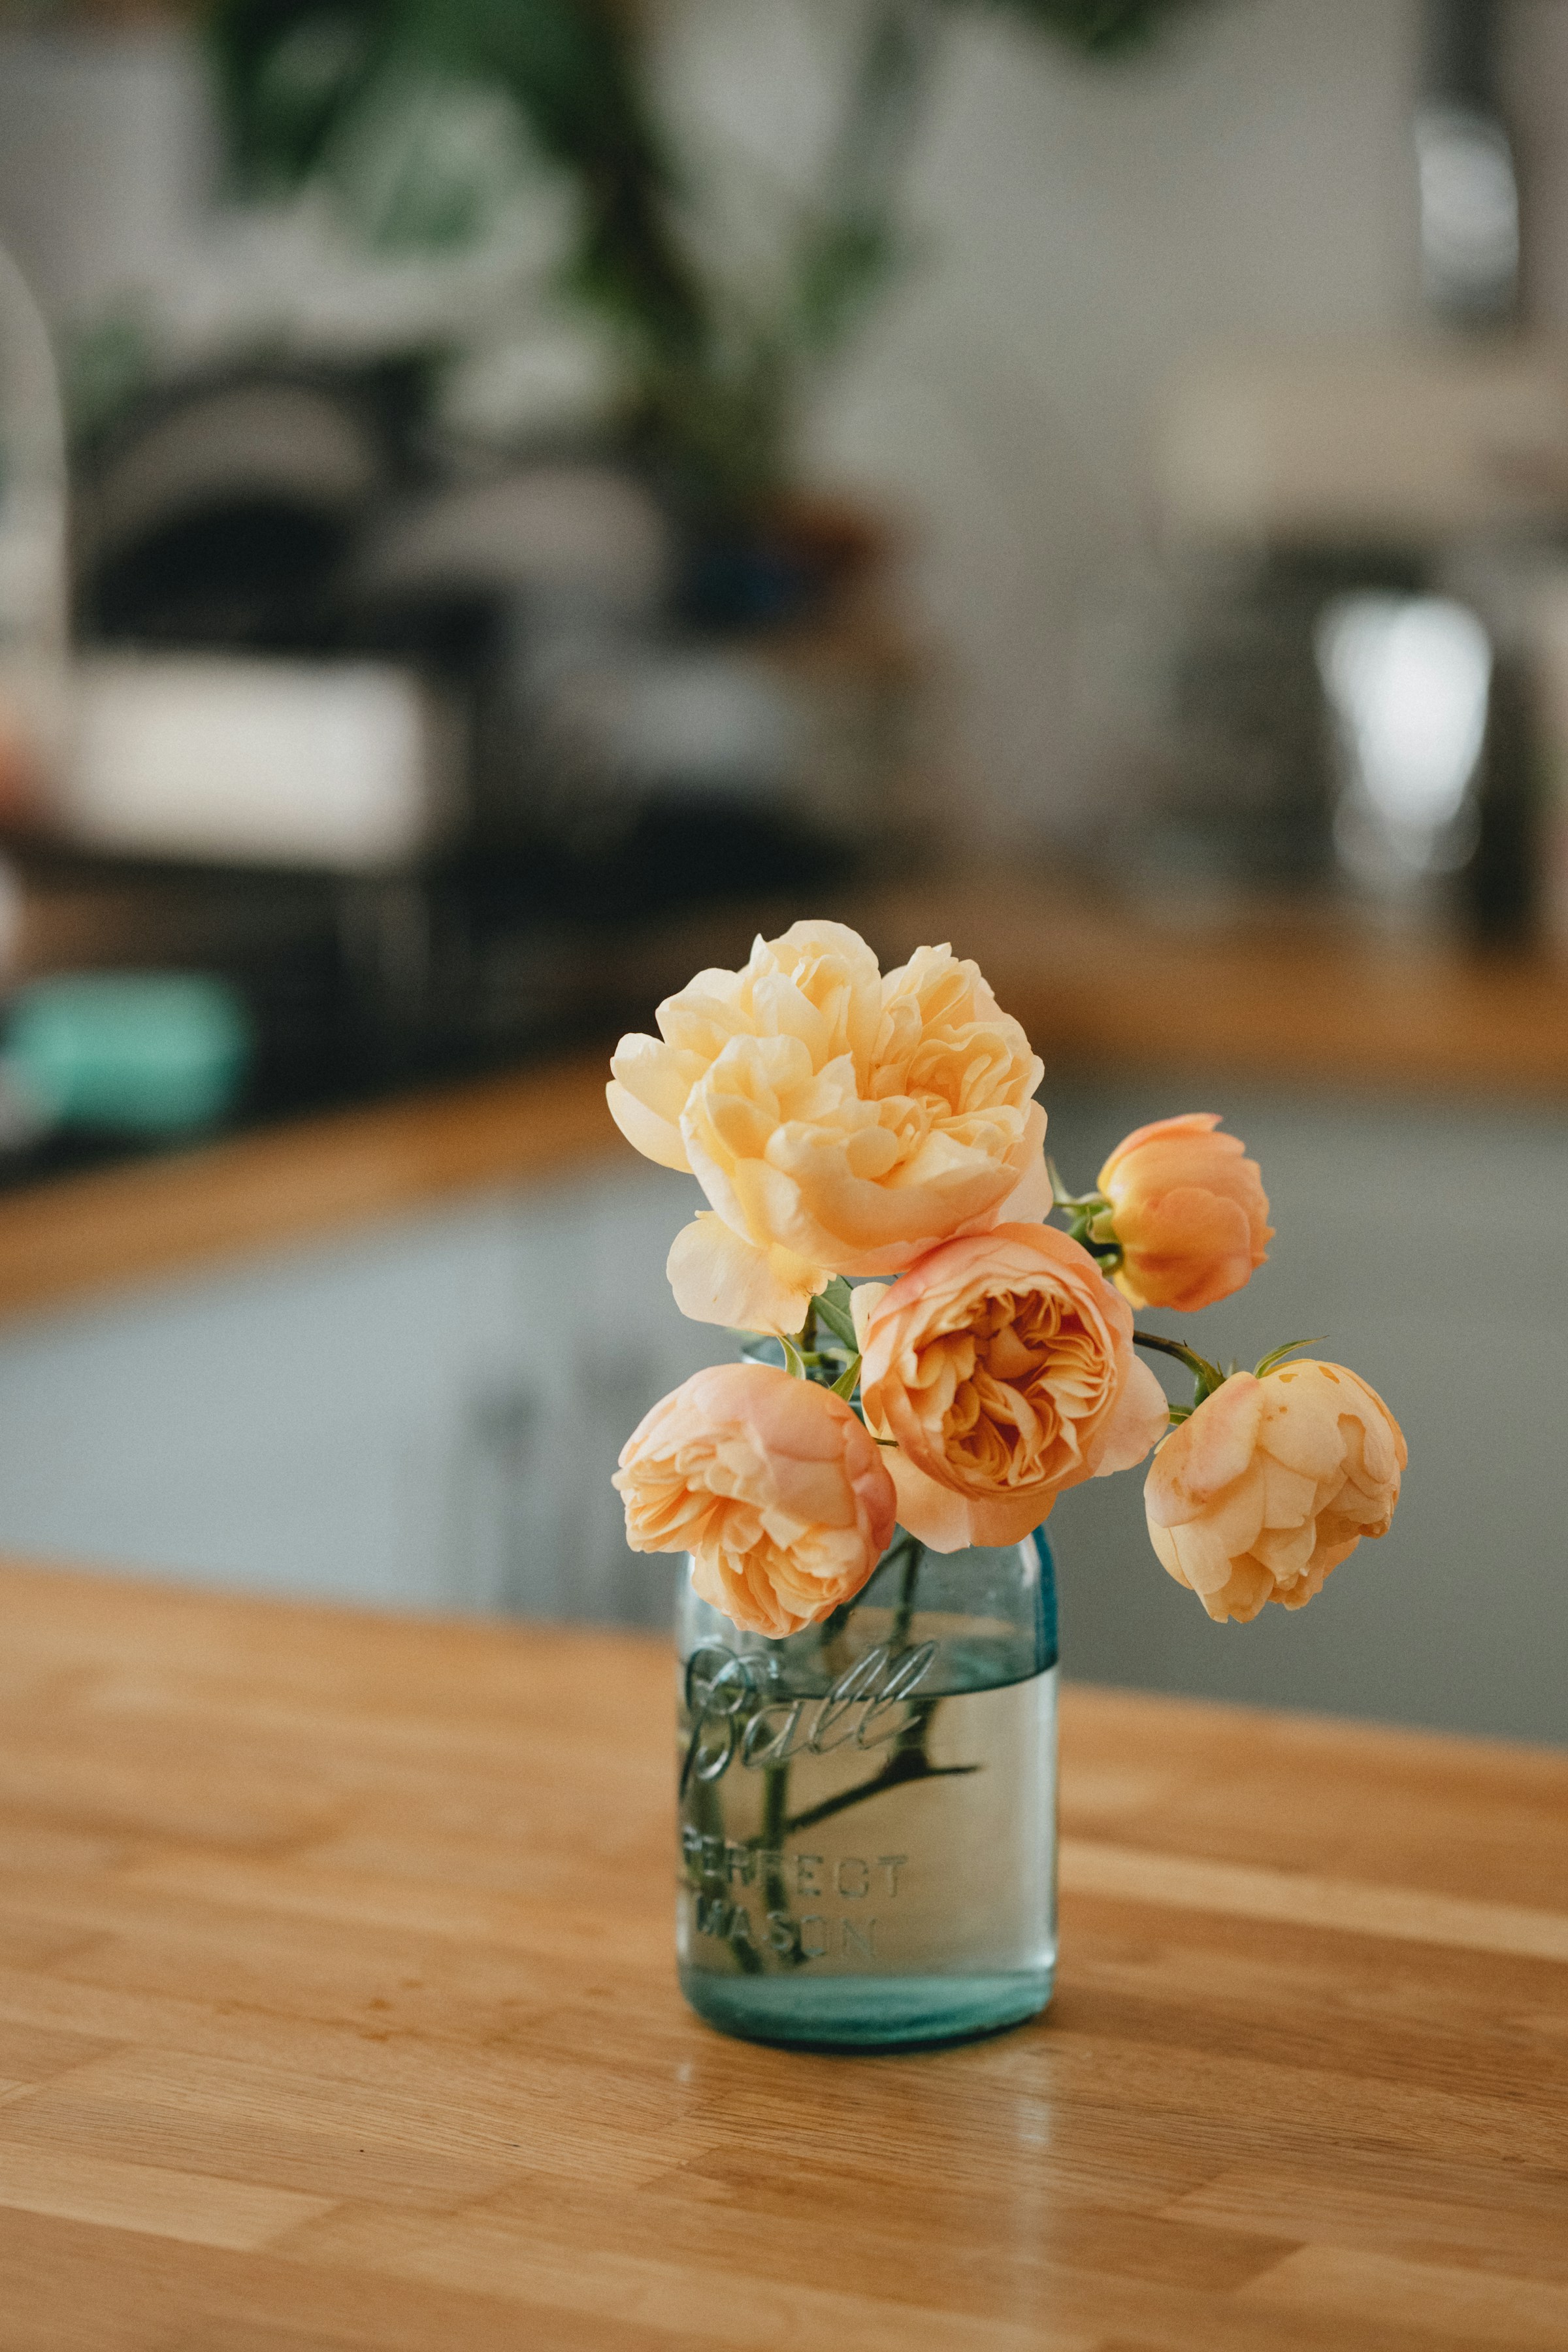 Un vase de fleurs | Source : Unsplash